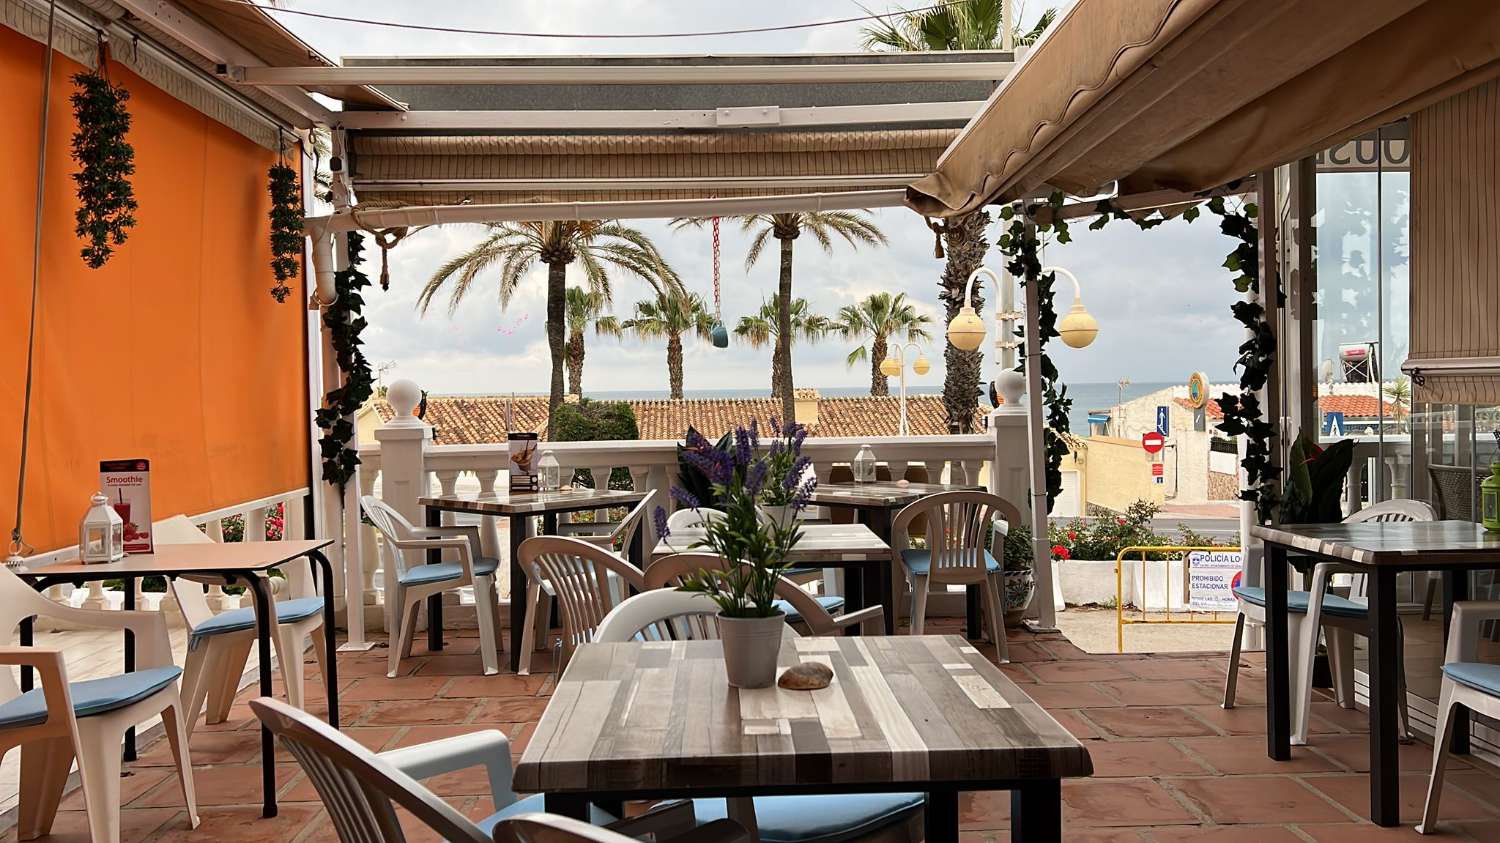 Cafe Bar in vendita a Benalmádena Costa del Sol - Fronte spiaggia - con CAMERA PROPRIETARIA